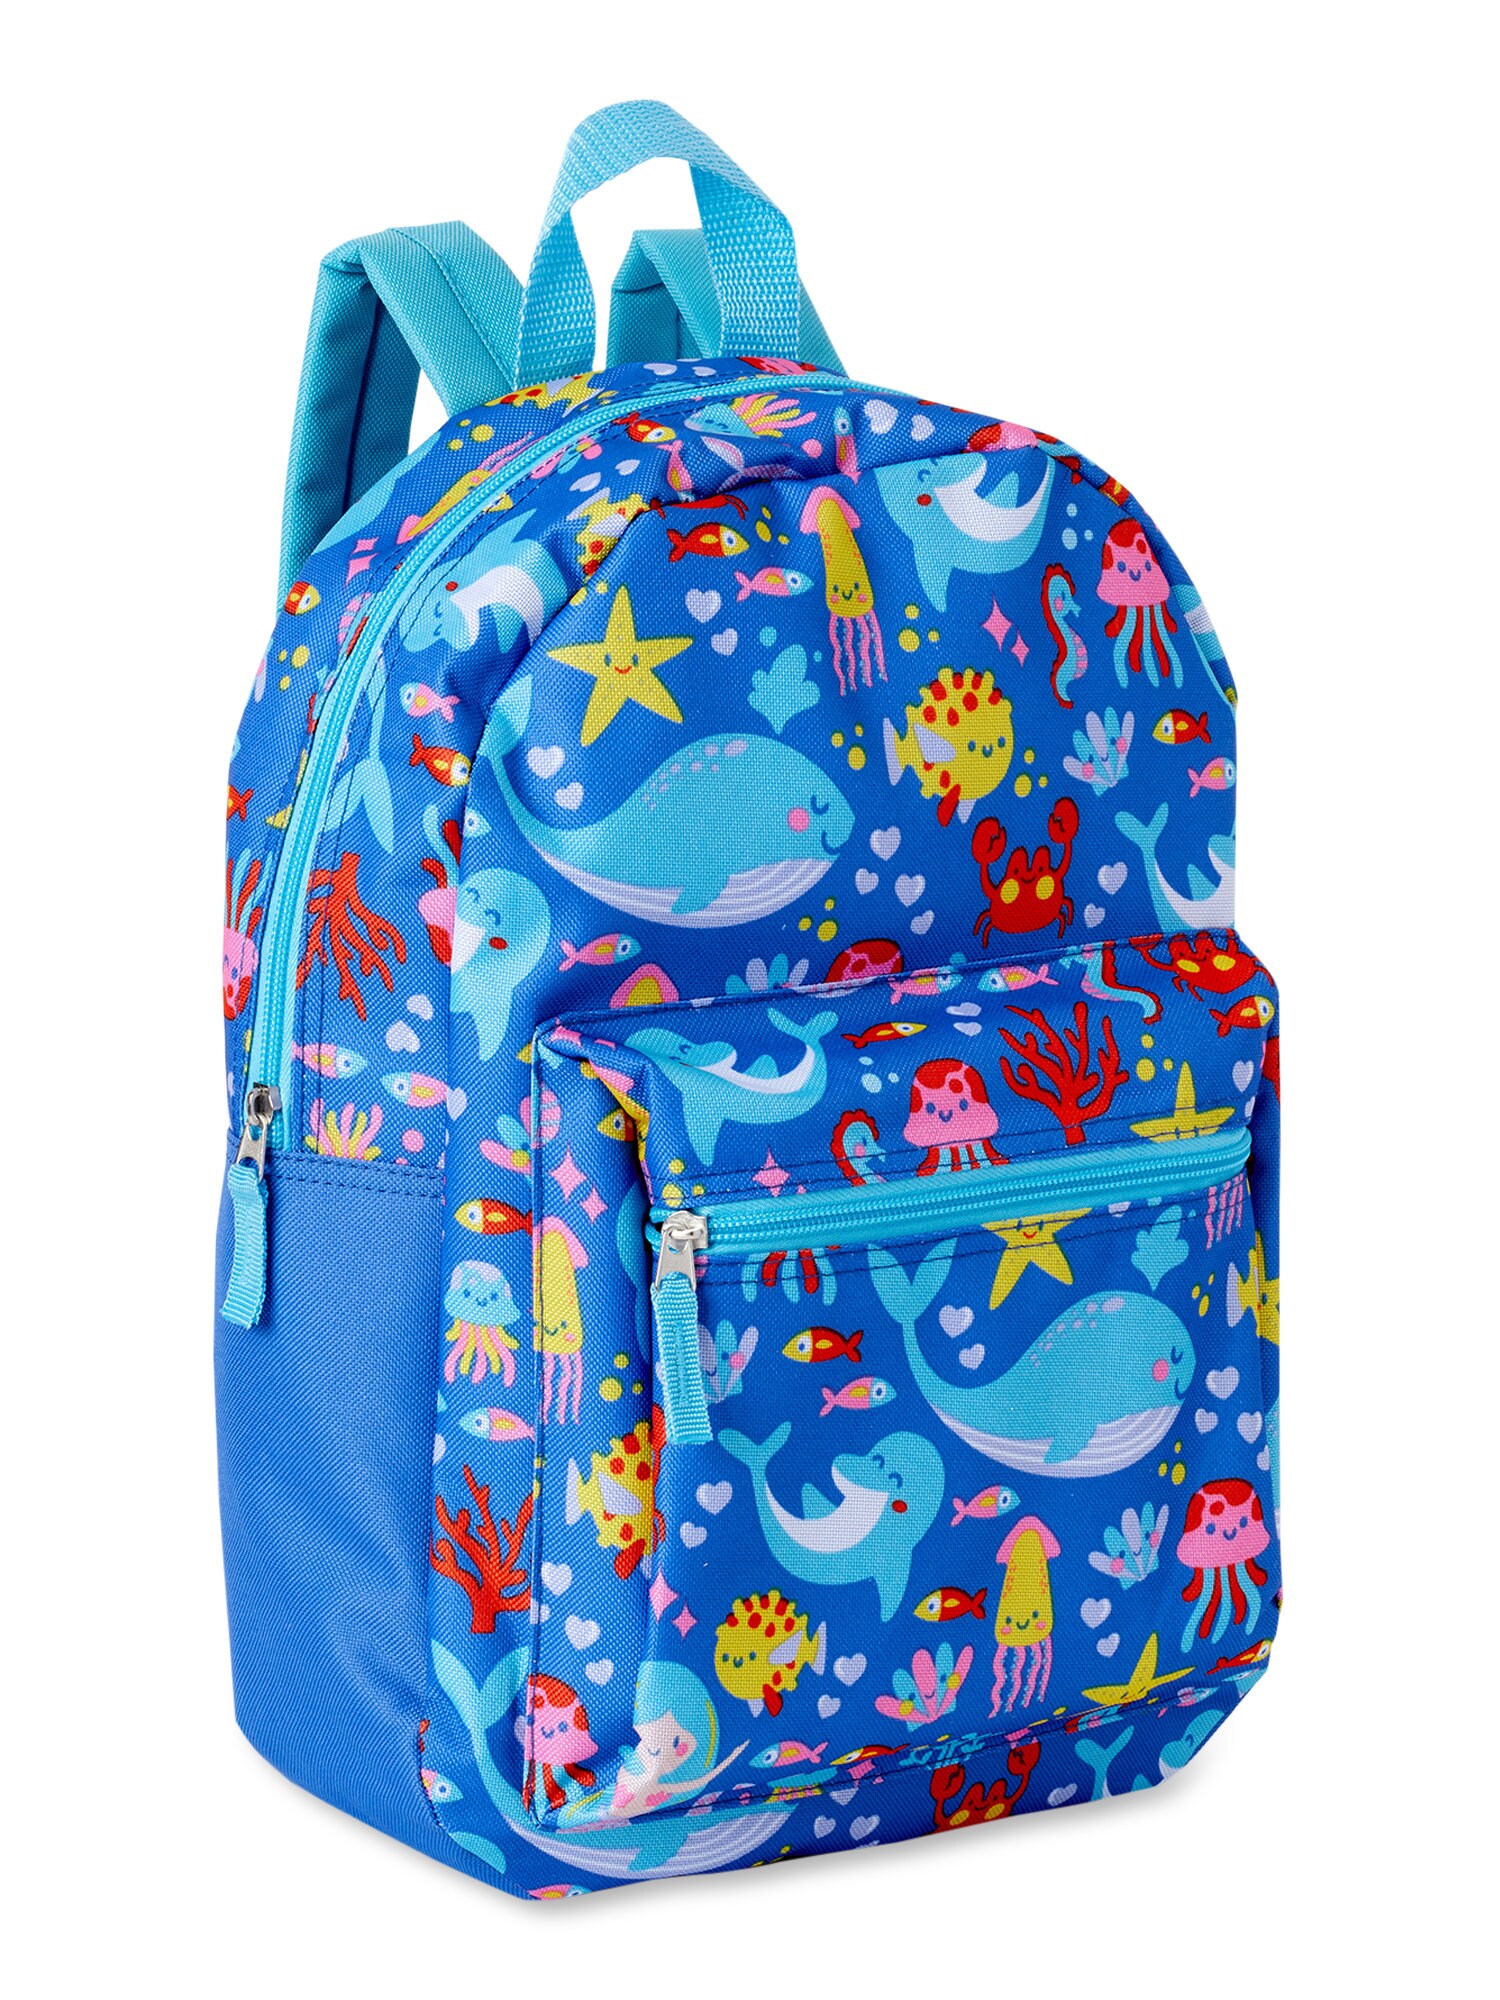 Mermaids Backpack Book Bag Backpack Kids Bag Child | Etsy